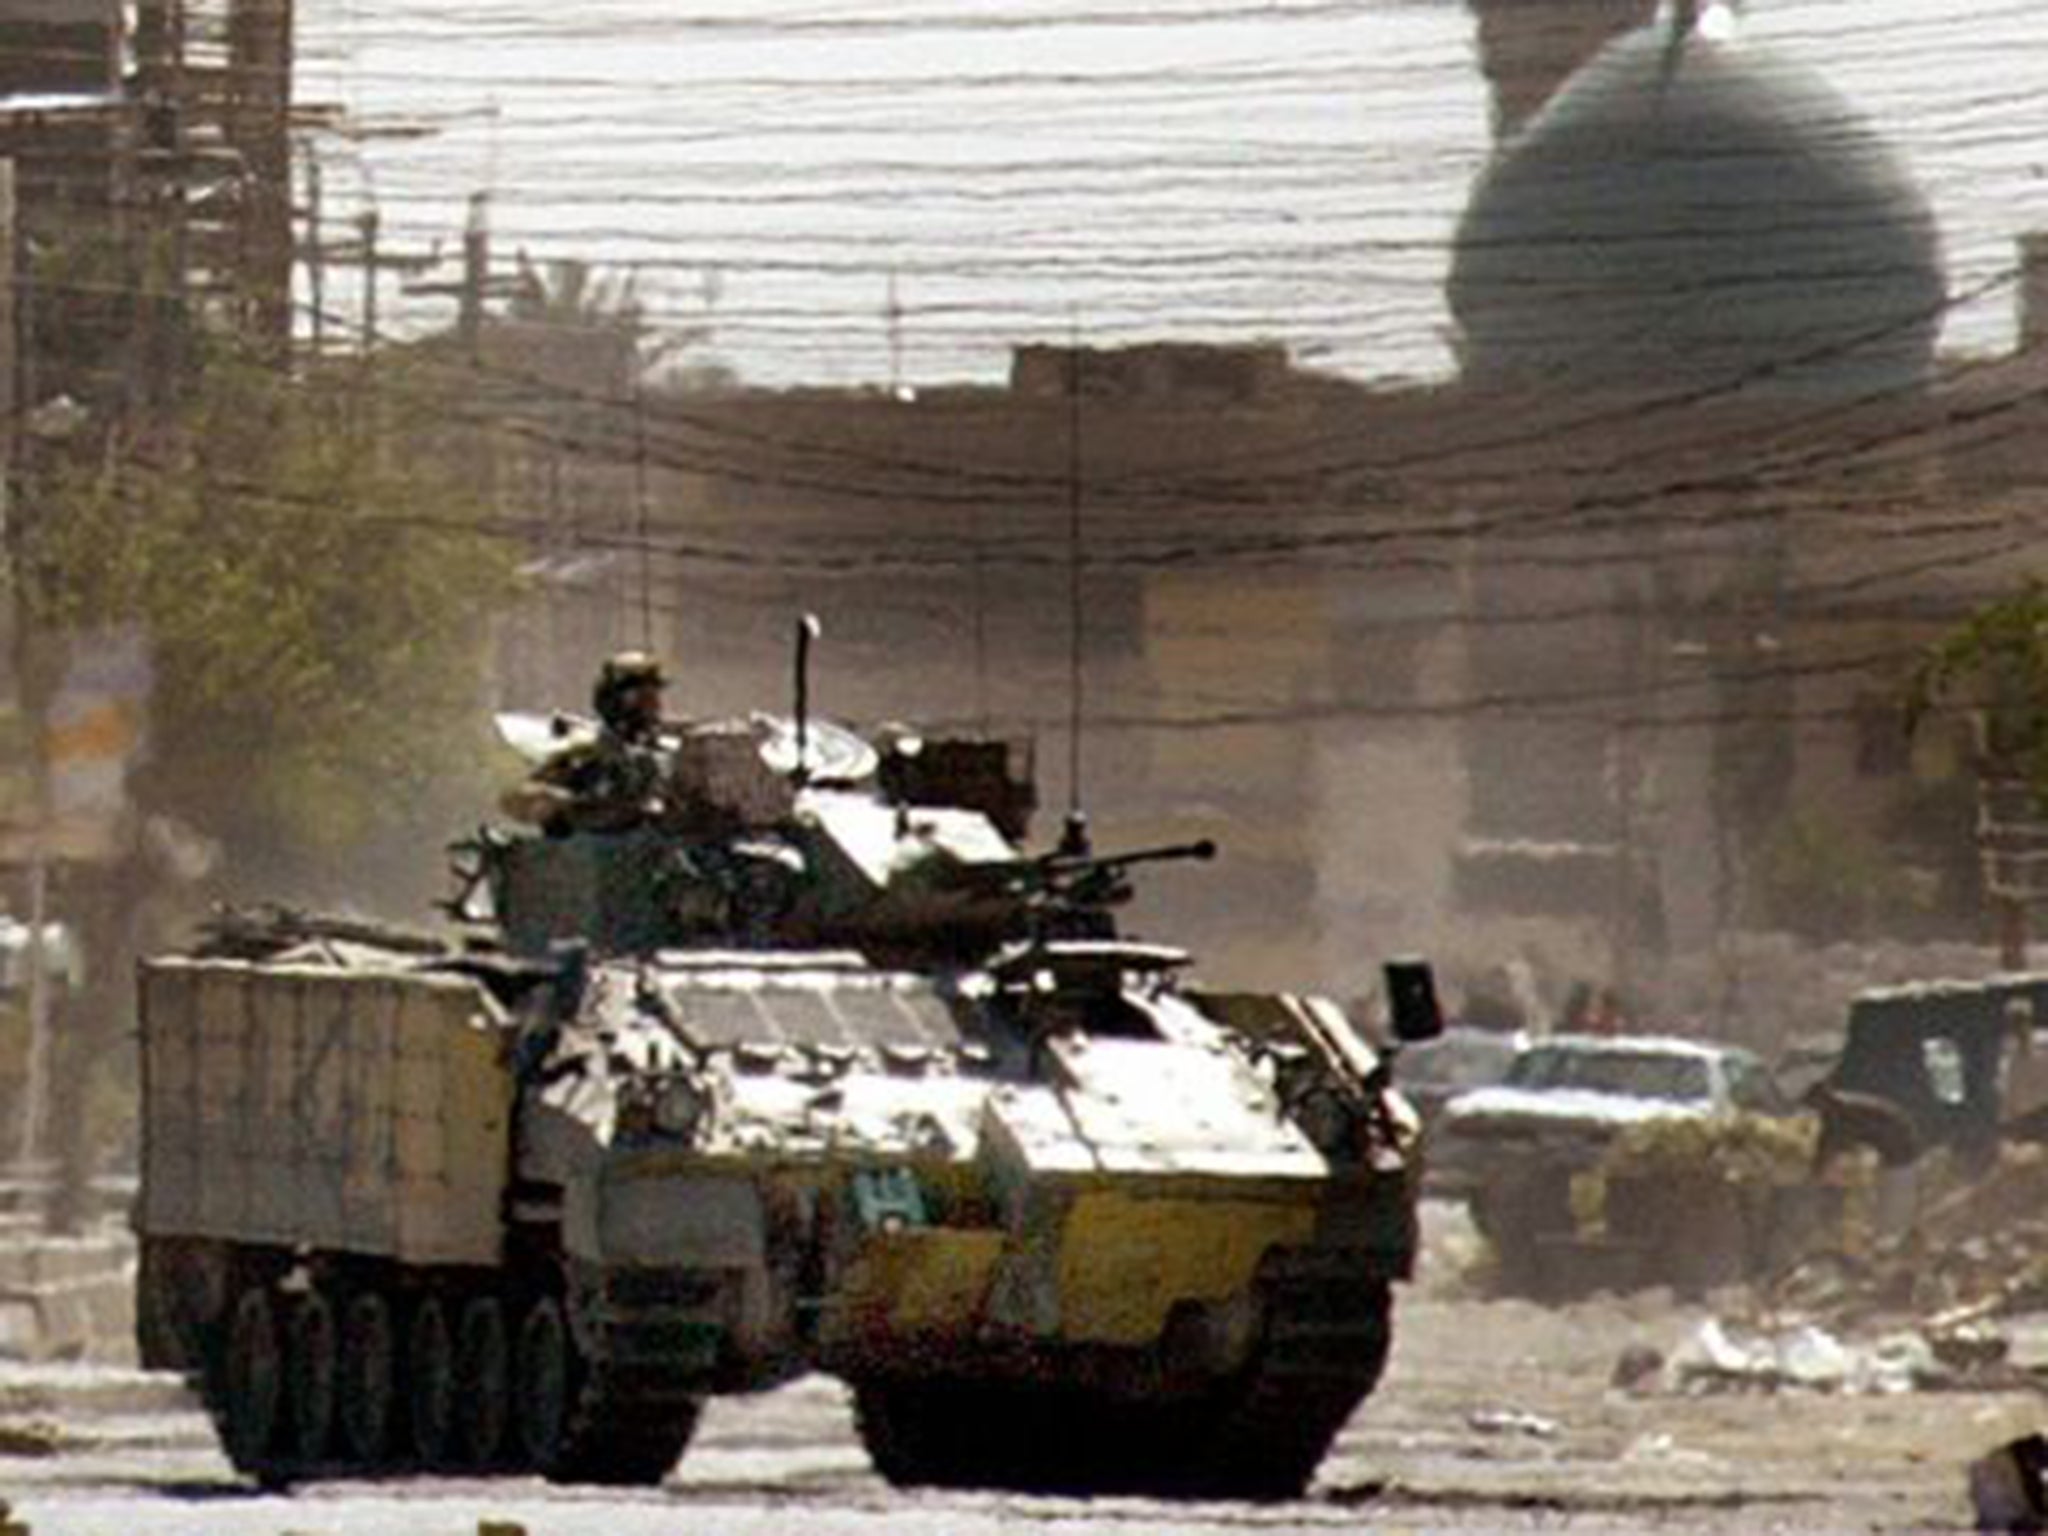 A British tank patrols in Basra, Iraq, in April 2004